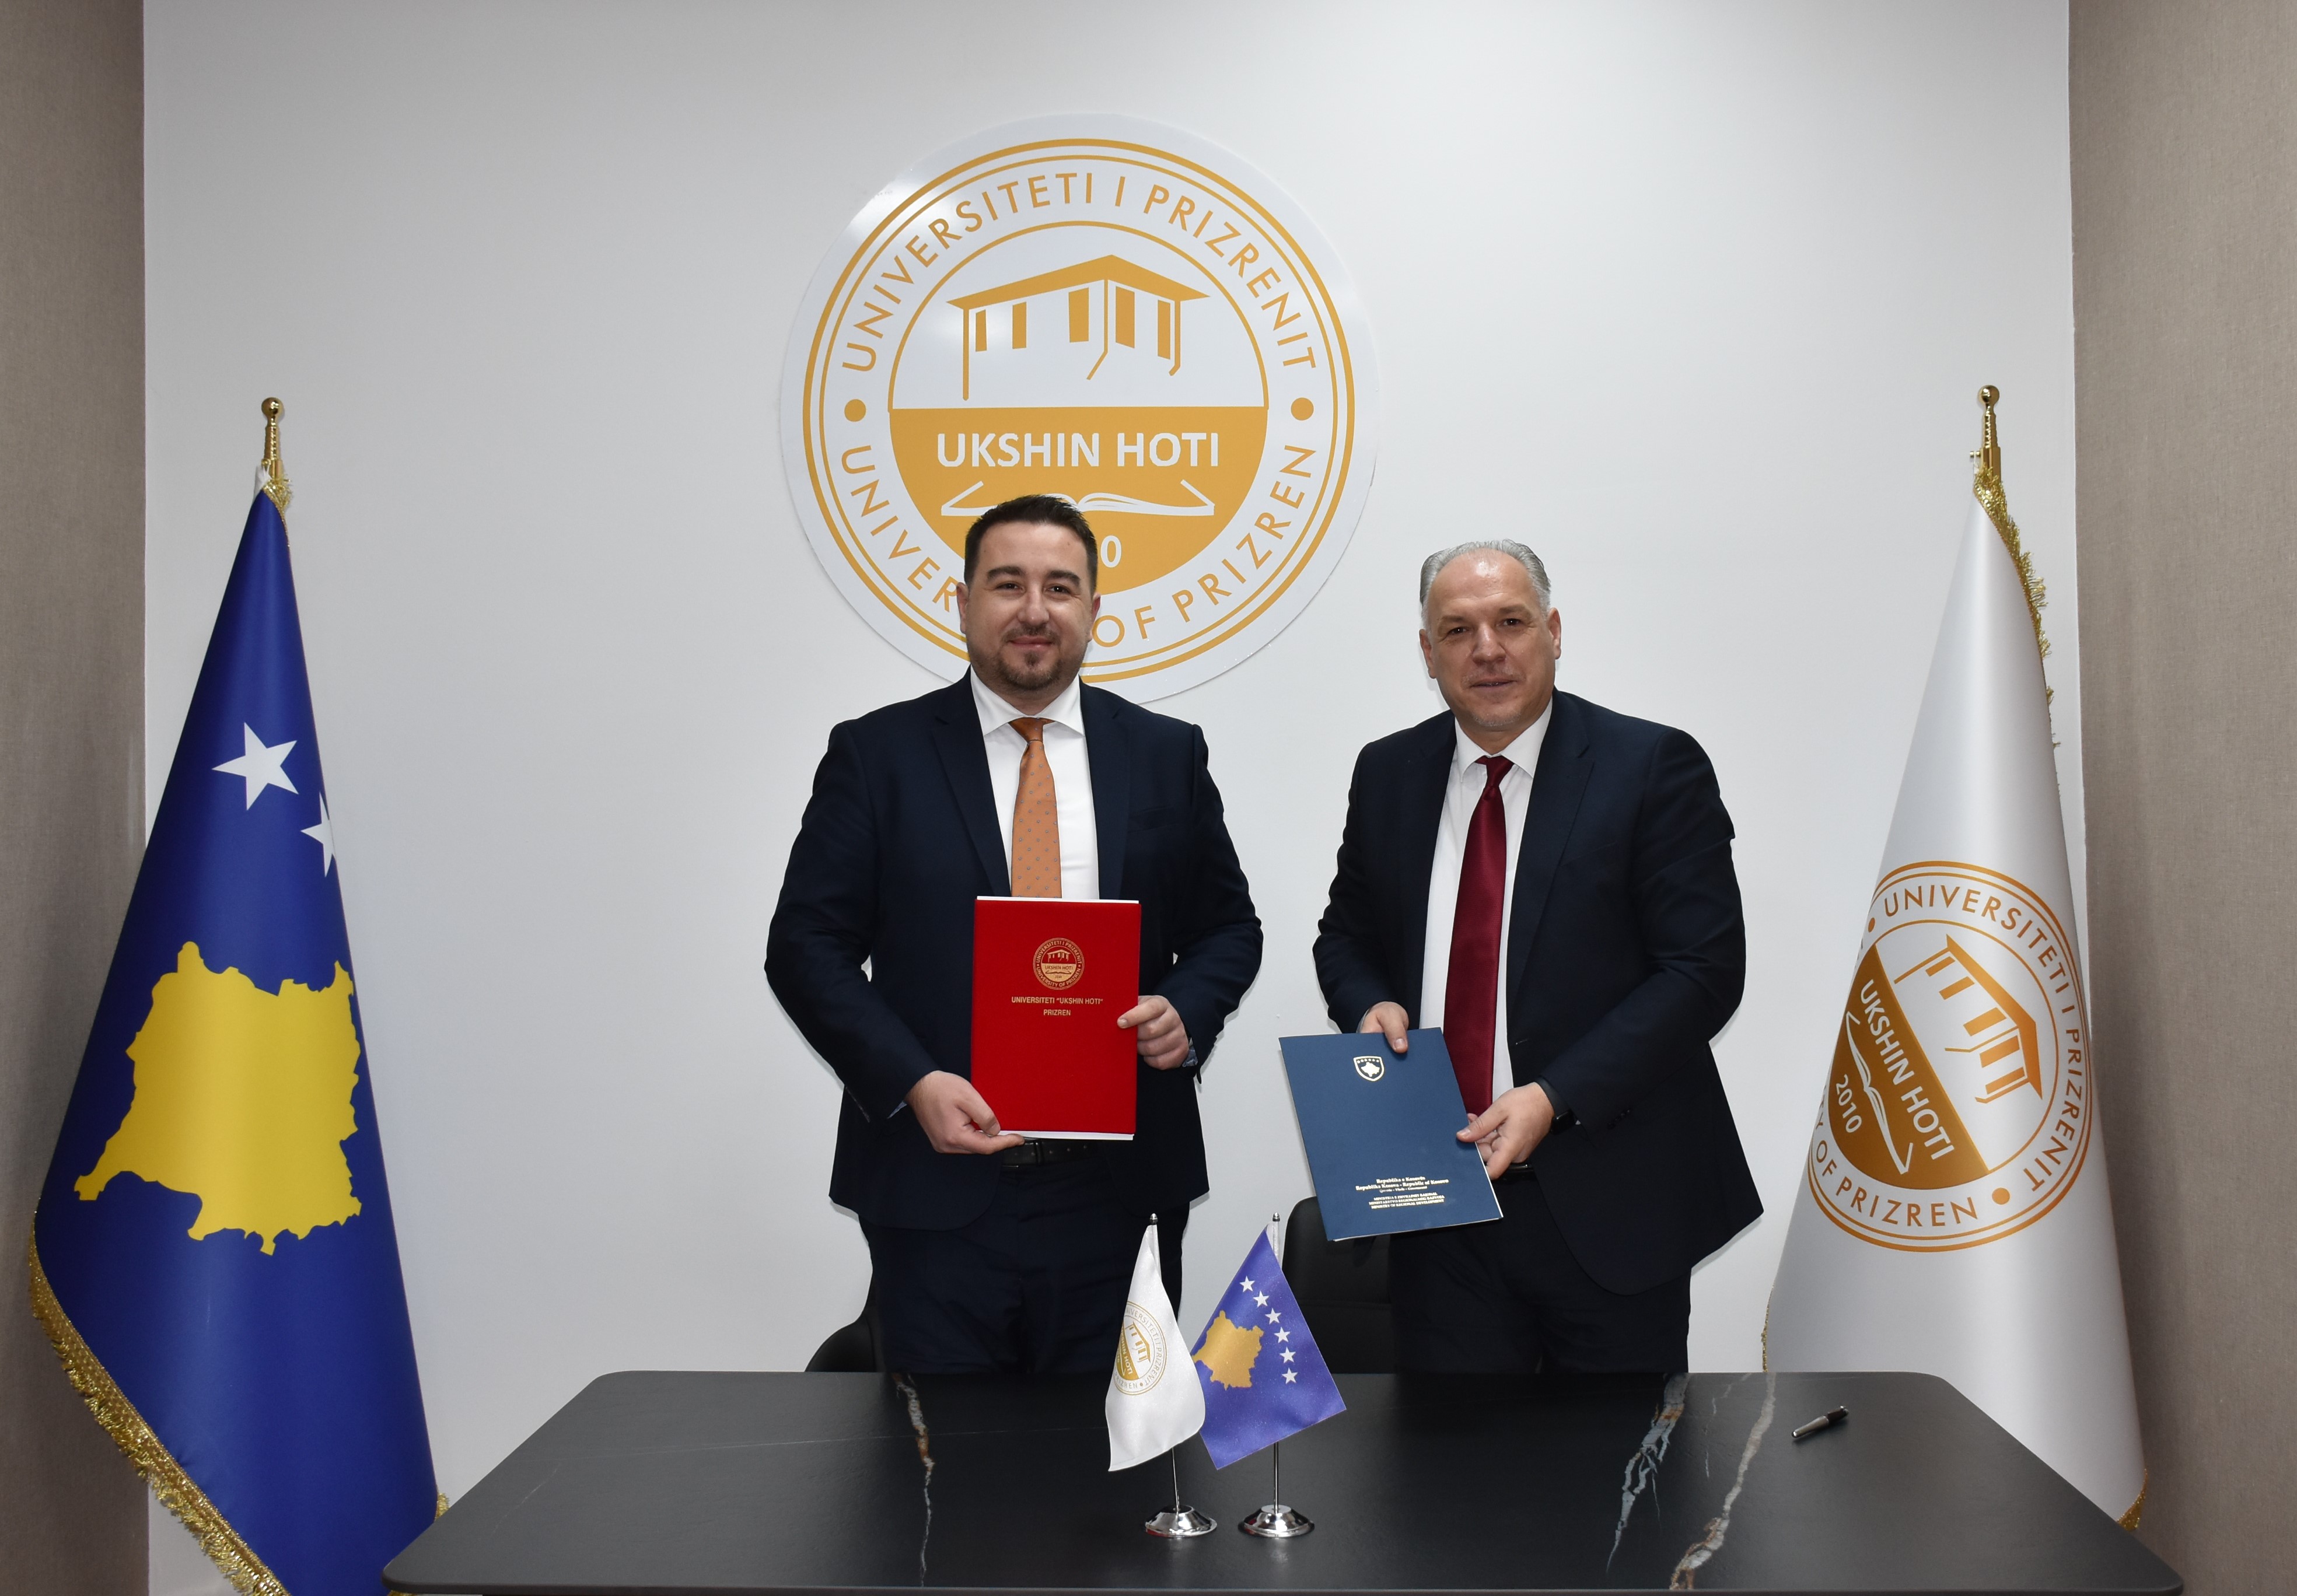 Ministria e Zhvillimit Rajonal nënshkruan Marrëveshjen e Bashkëpunimit me Universitetin “Ukshin Hoti” në Prizren.